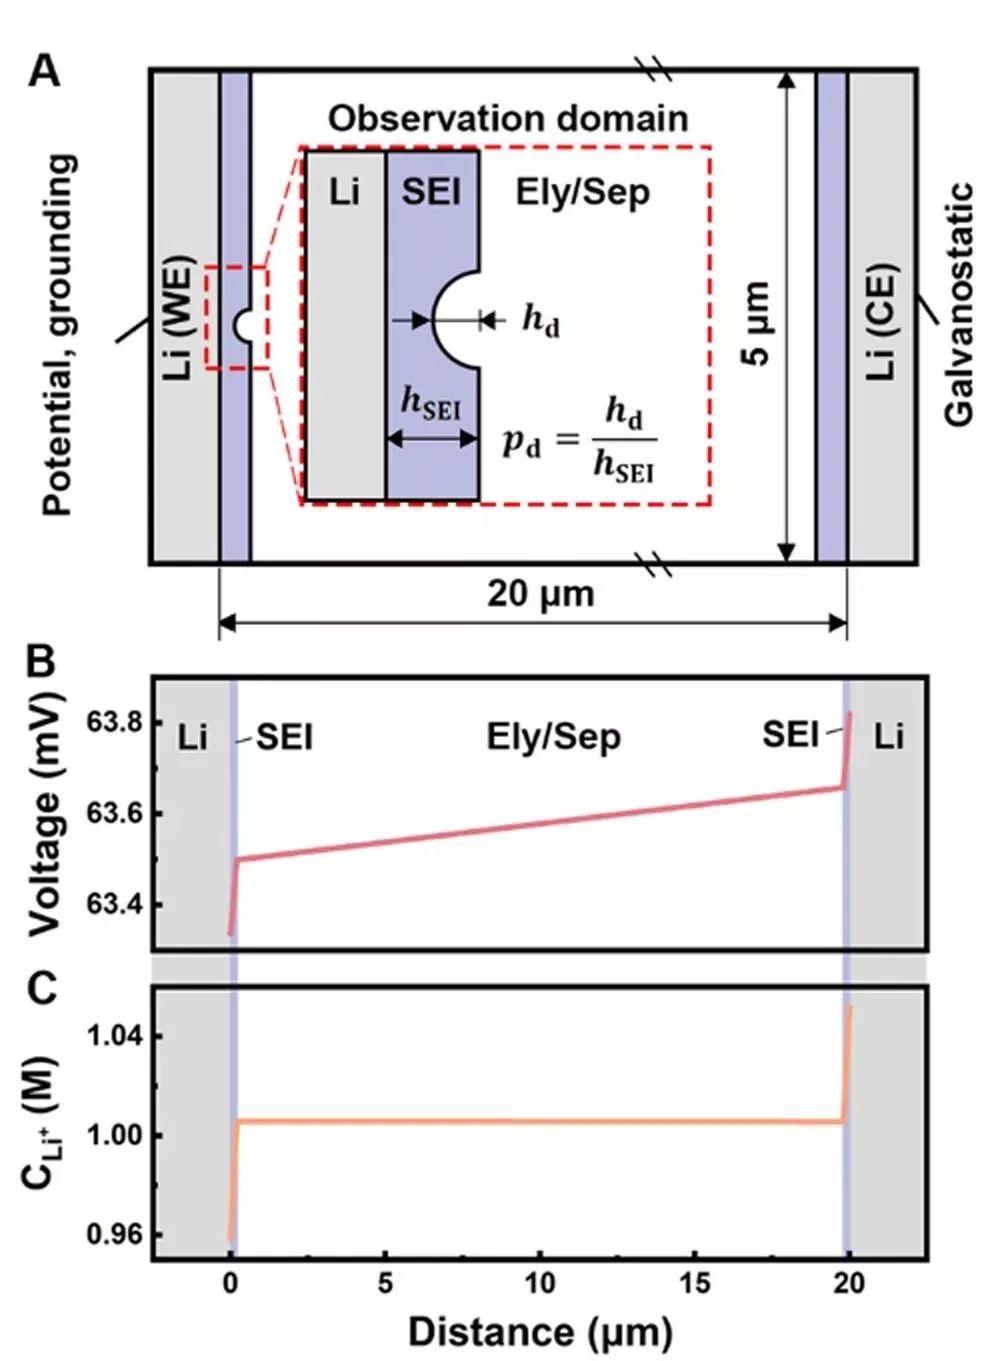 清华大学张强AEM：金属锂负极表面的SEI膜破裂失效机理探究